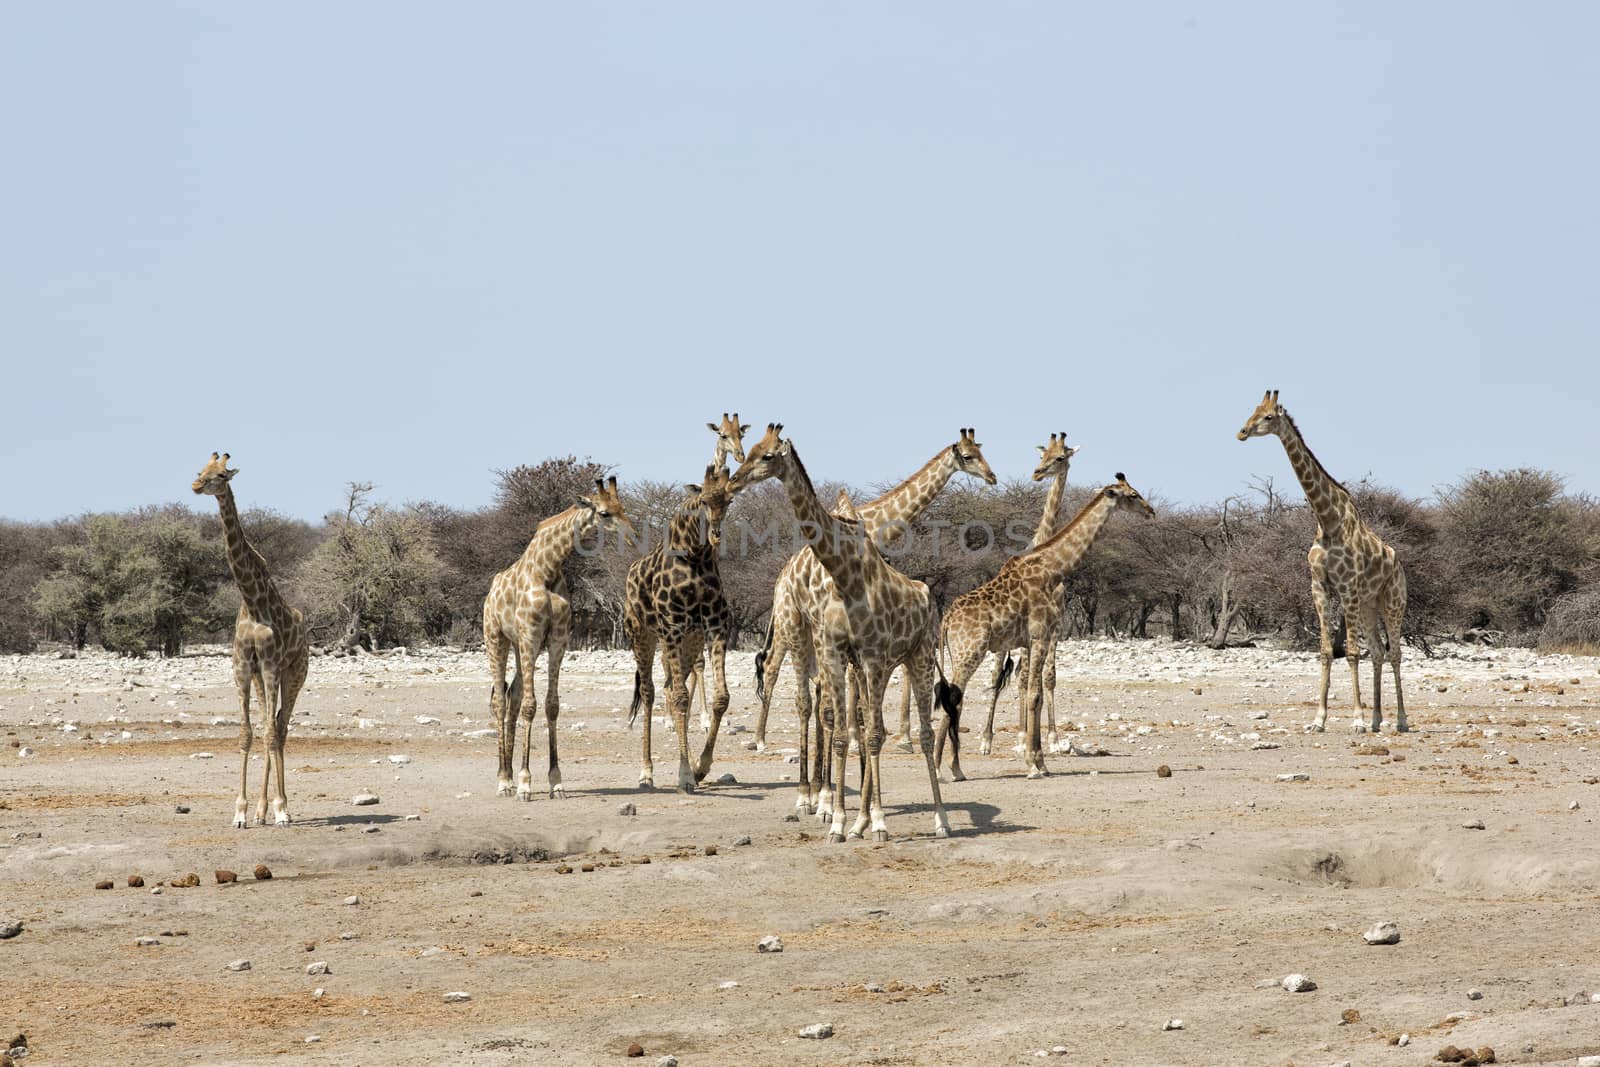 Herd of Giraffes, Etosha National Park, Namibia by Tjeerdkruse